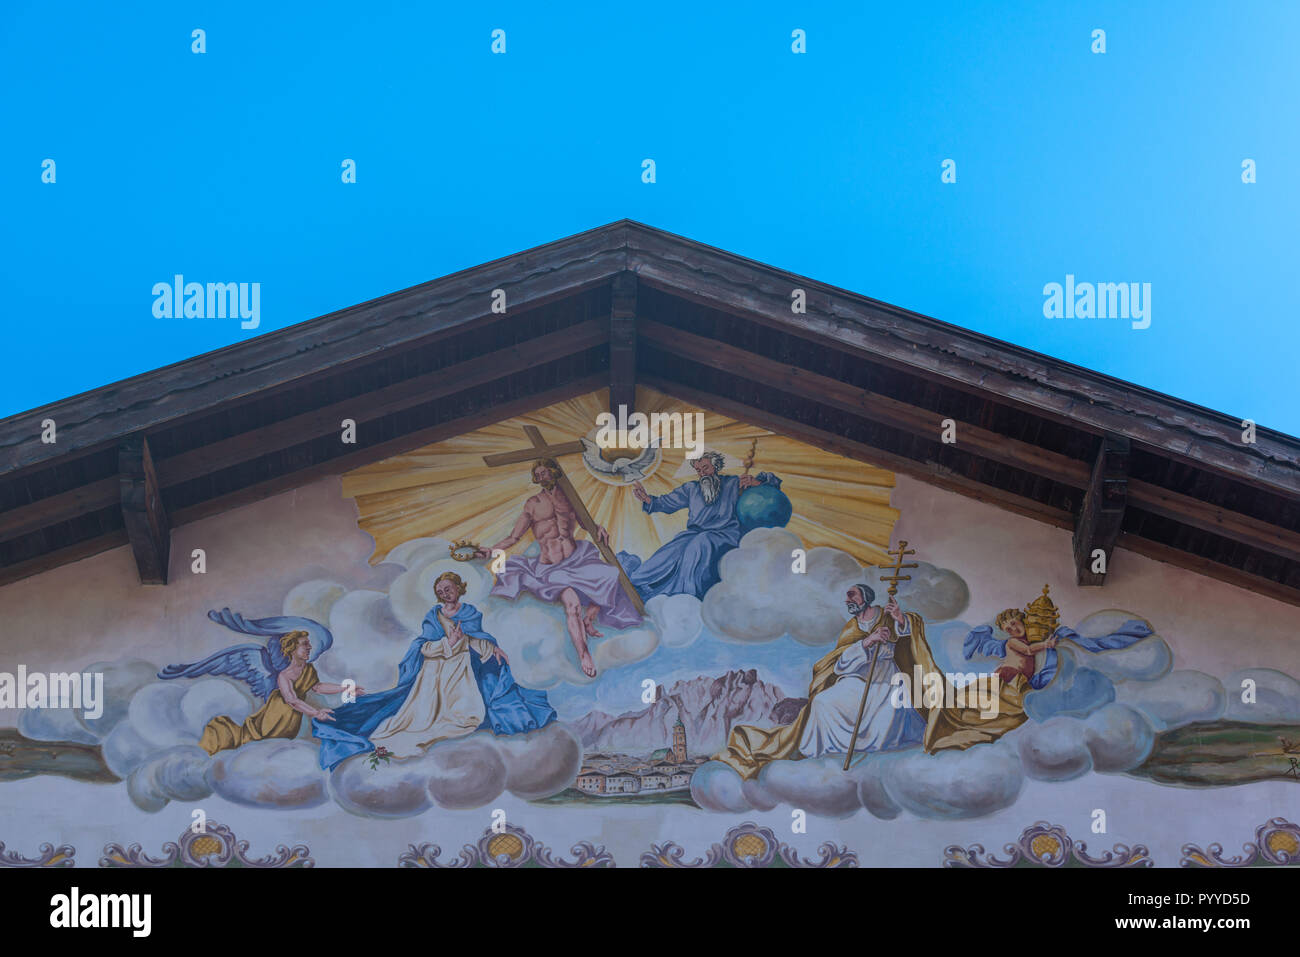 Haut pignon d'une maison bavaroise traditionnelle, peintures murales, Mittenwald, Upper Bavaria, Bavaria, Germany, Europe, Banque D'Images